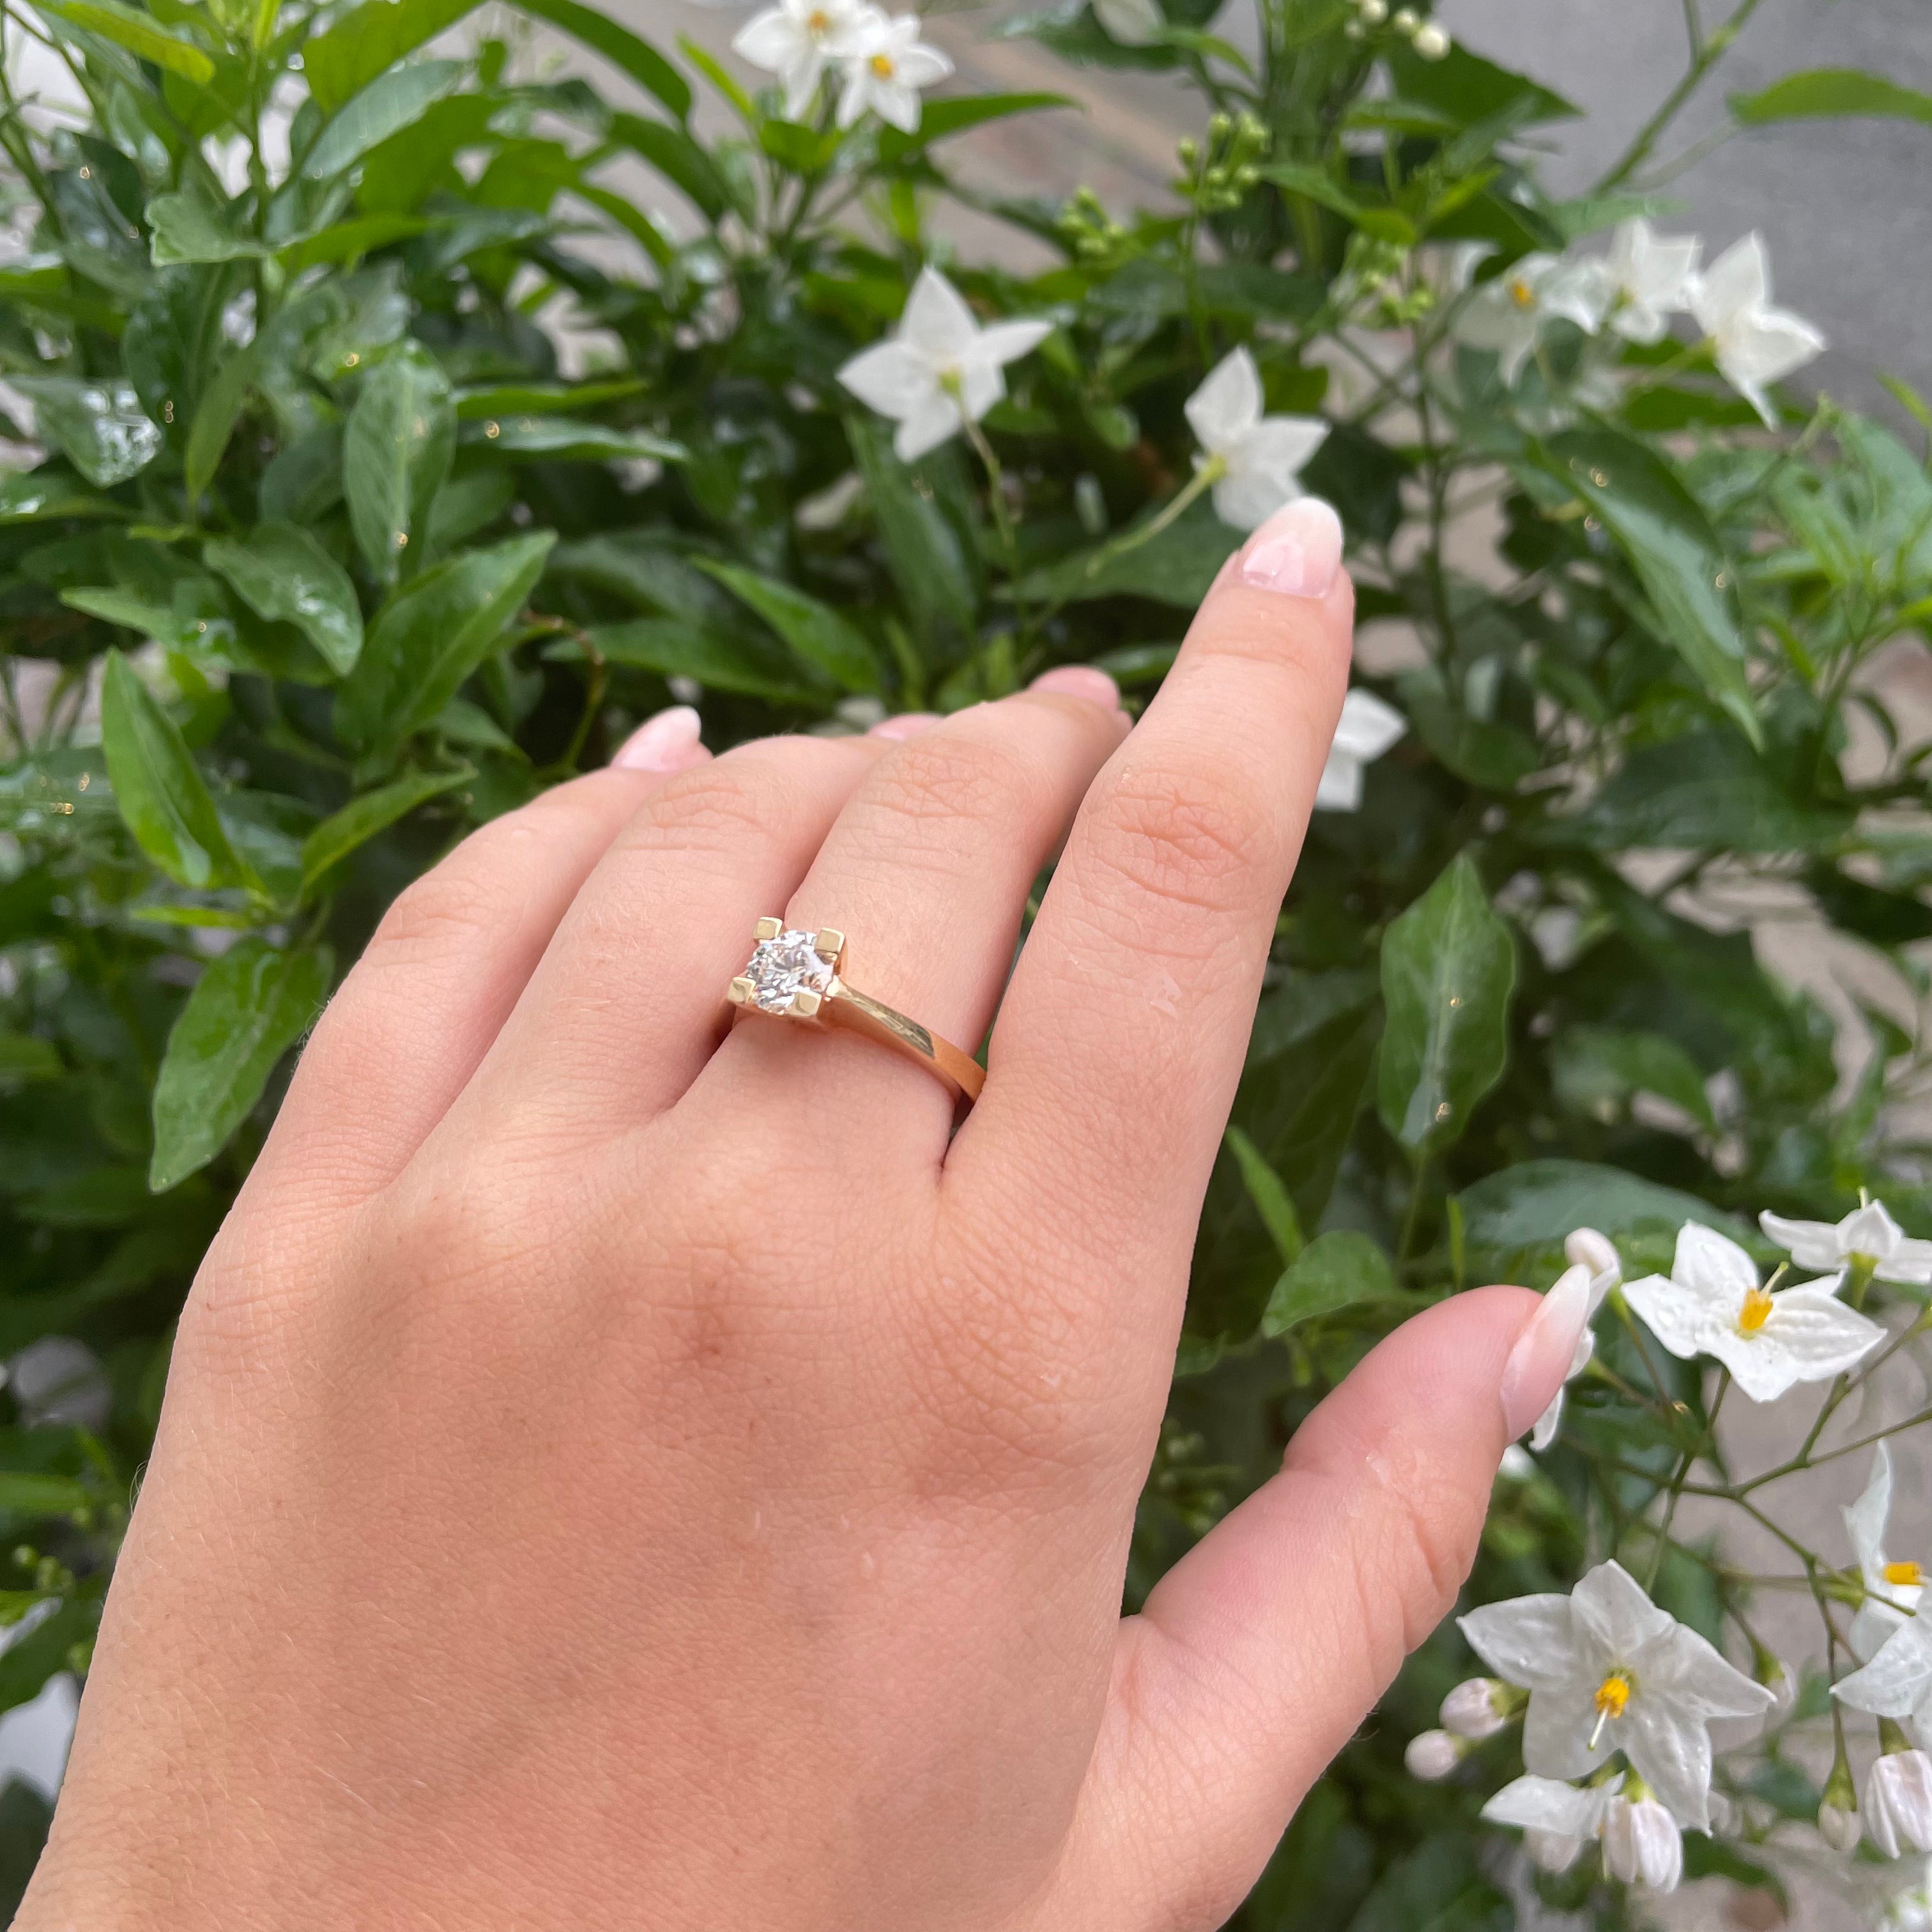 Smuk og klassik designet prinsessering - ringen er designet med små "vinger" på skinnen, det gør ringen sidder bedre på fingeren og den smukke brillant kan stråle.  De 4 x 0,01 ct tw vvs brillanter sidder fint og fremhæver den blændende center brillant.